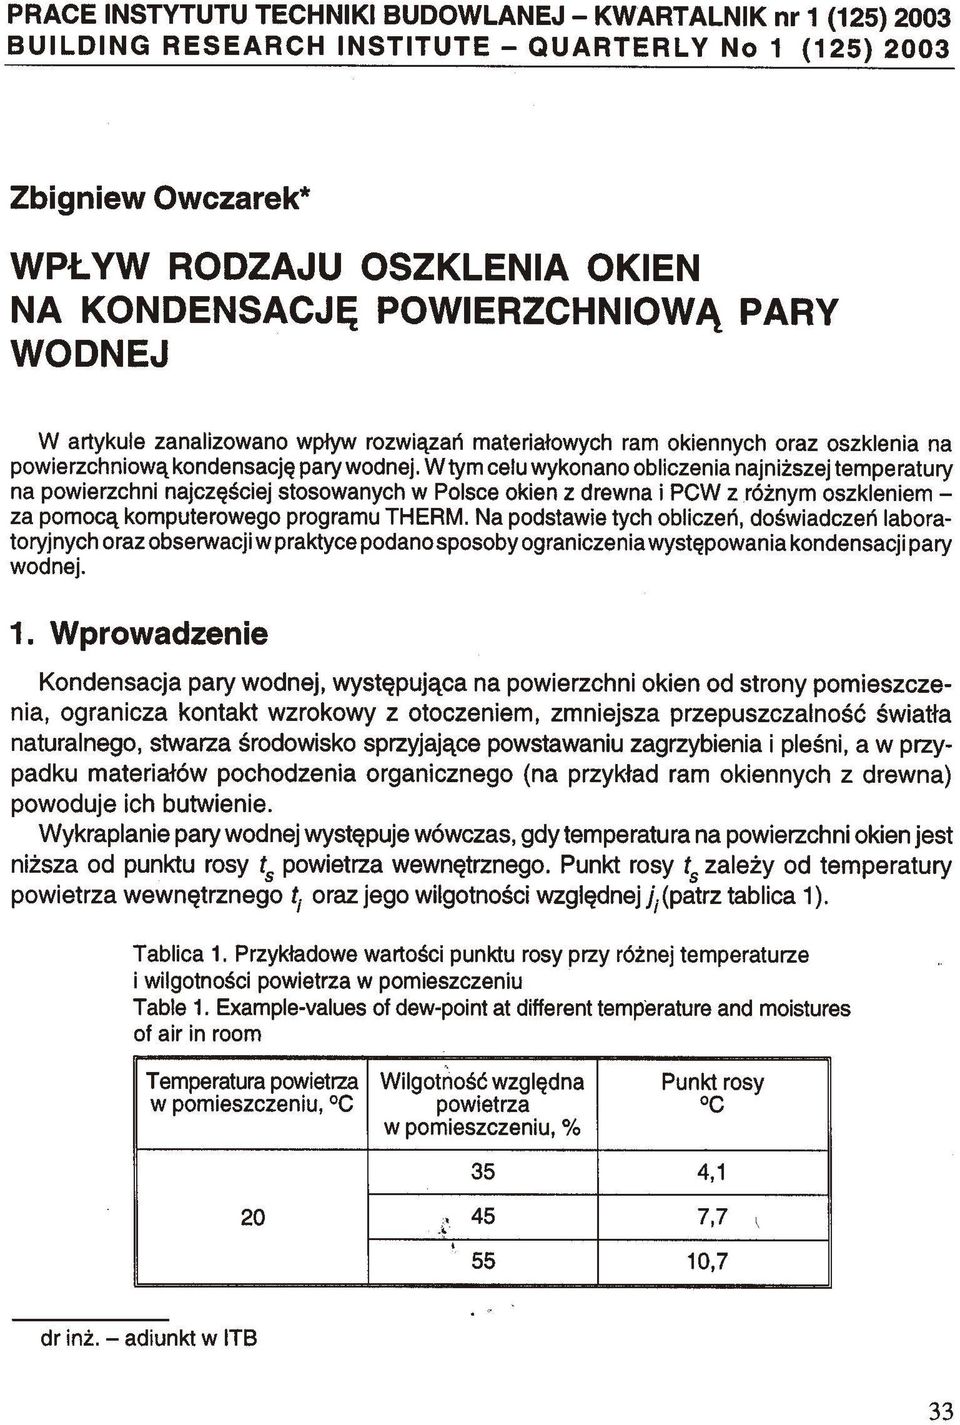 W tym celu wykonano obliczenia najniższej temperatury na powierzchni najczęściej stosowanych w Polsce okien z drewna i PCW z różnym oszkleniem - za pomocą komputerowego programu THERM.